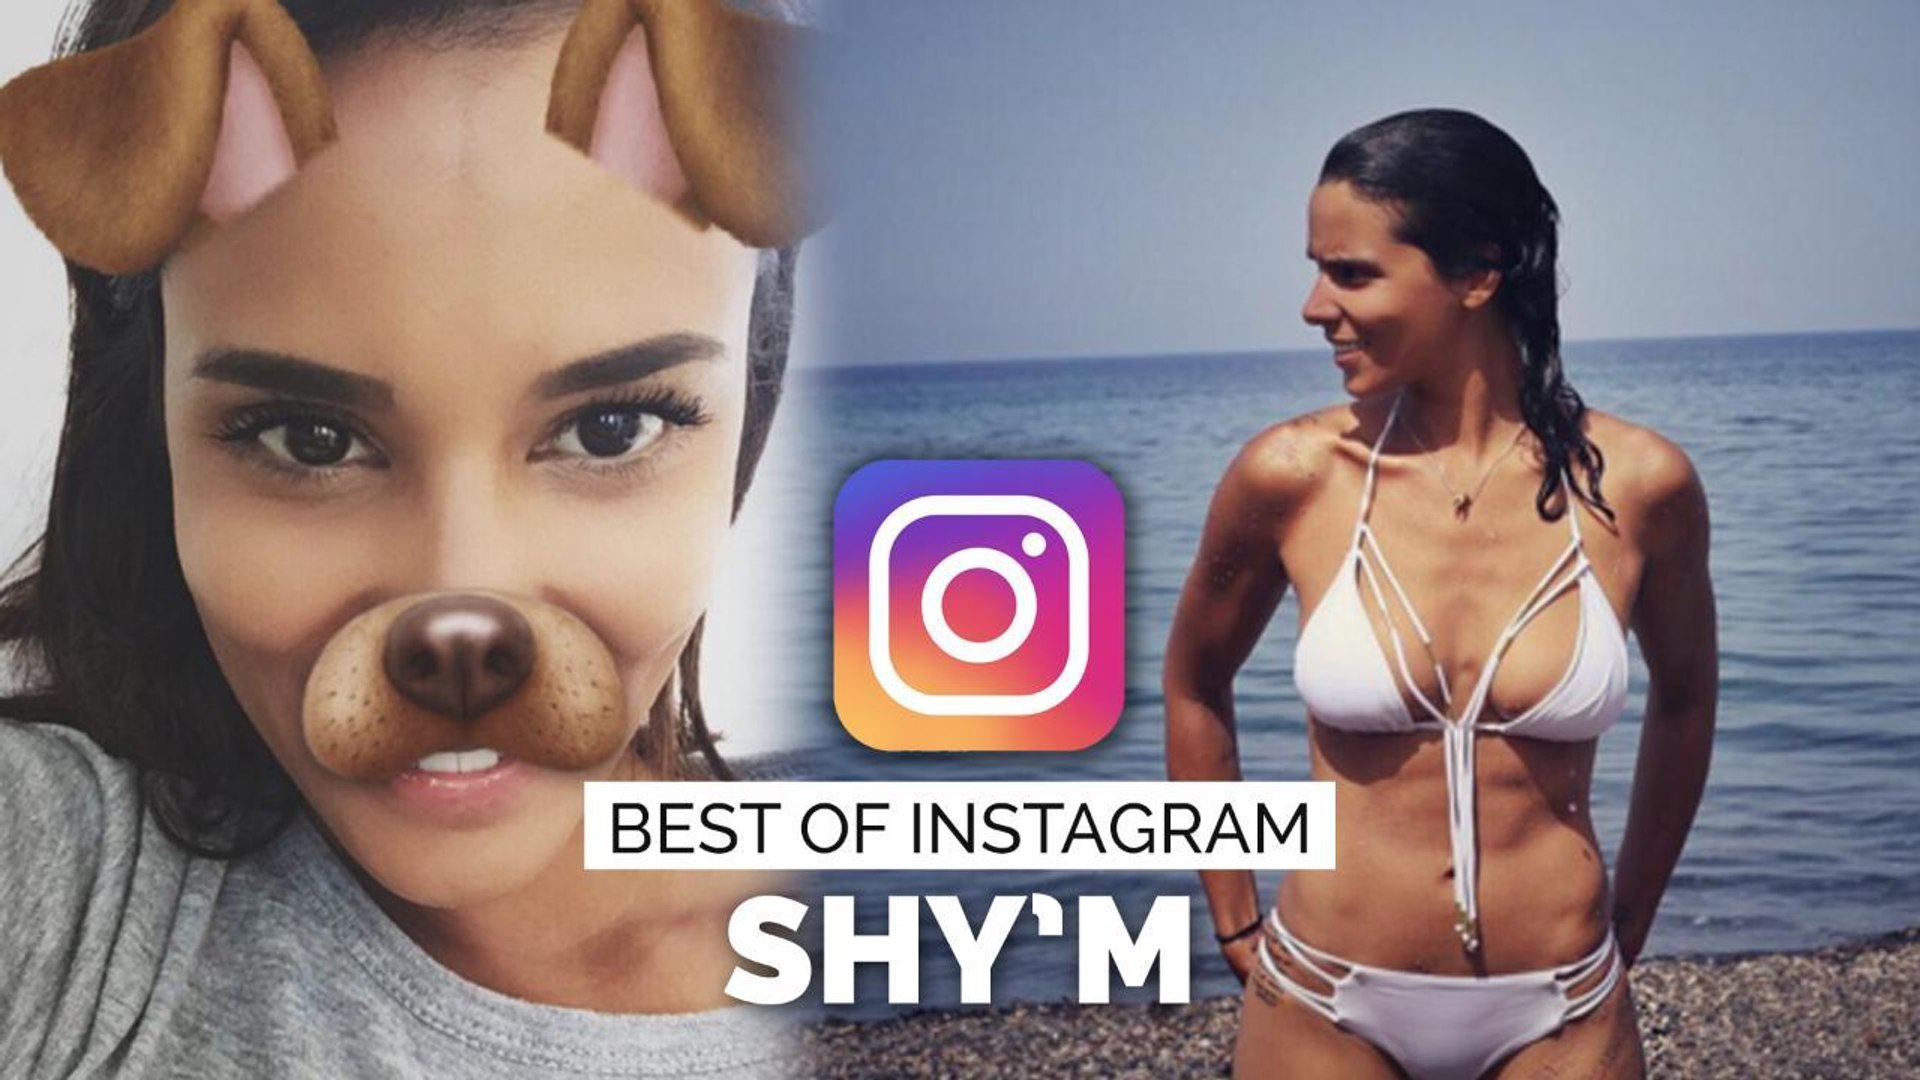 Shy'm : photos sexy et délires multiples... Son best of Instagram - Vidéo  Dailymotion